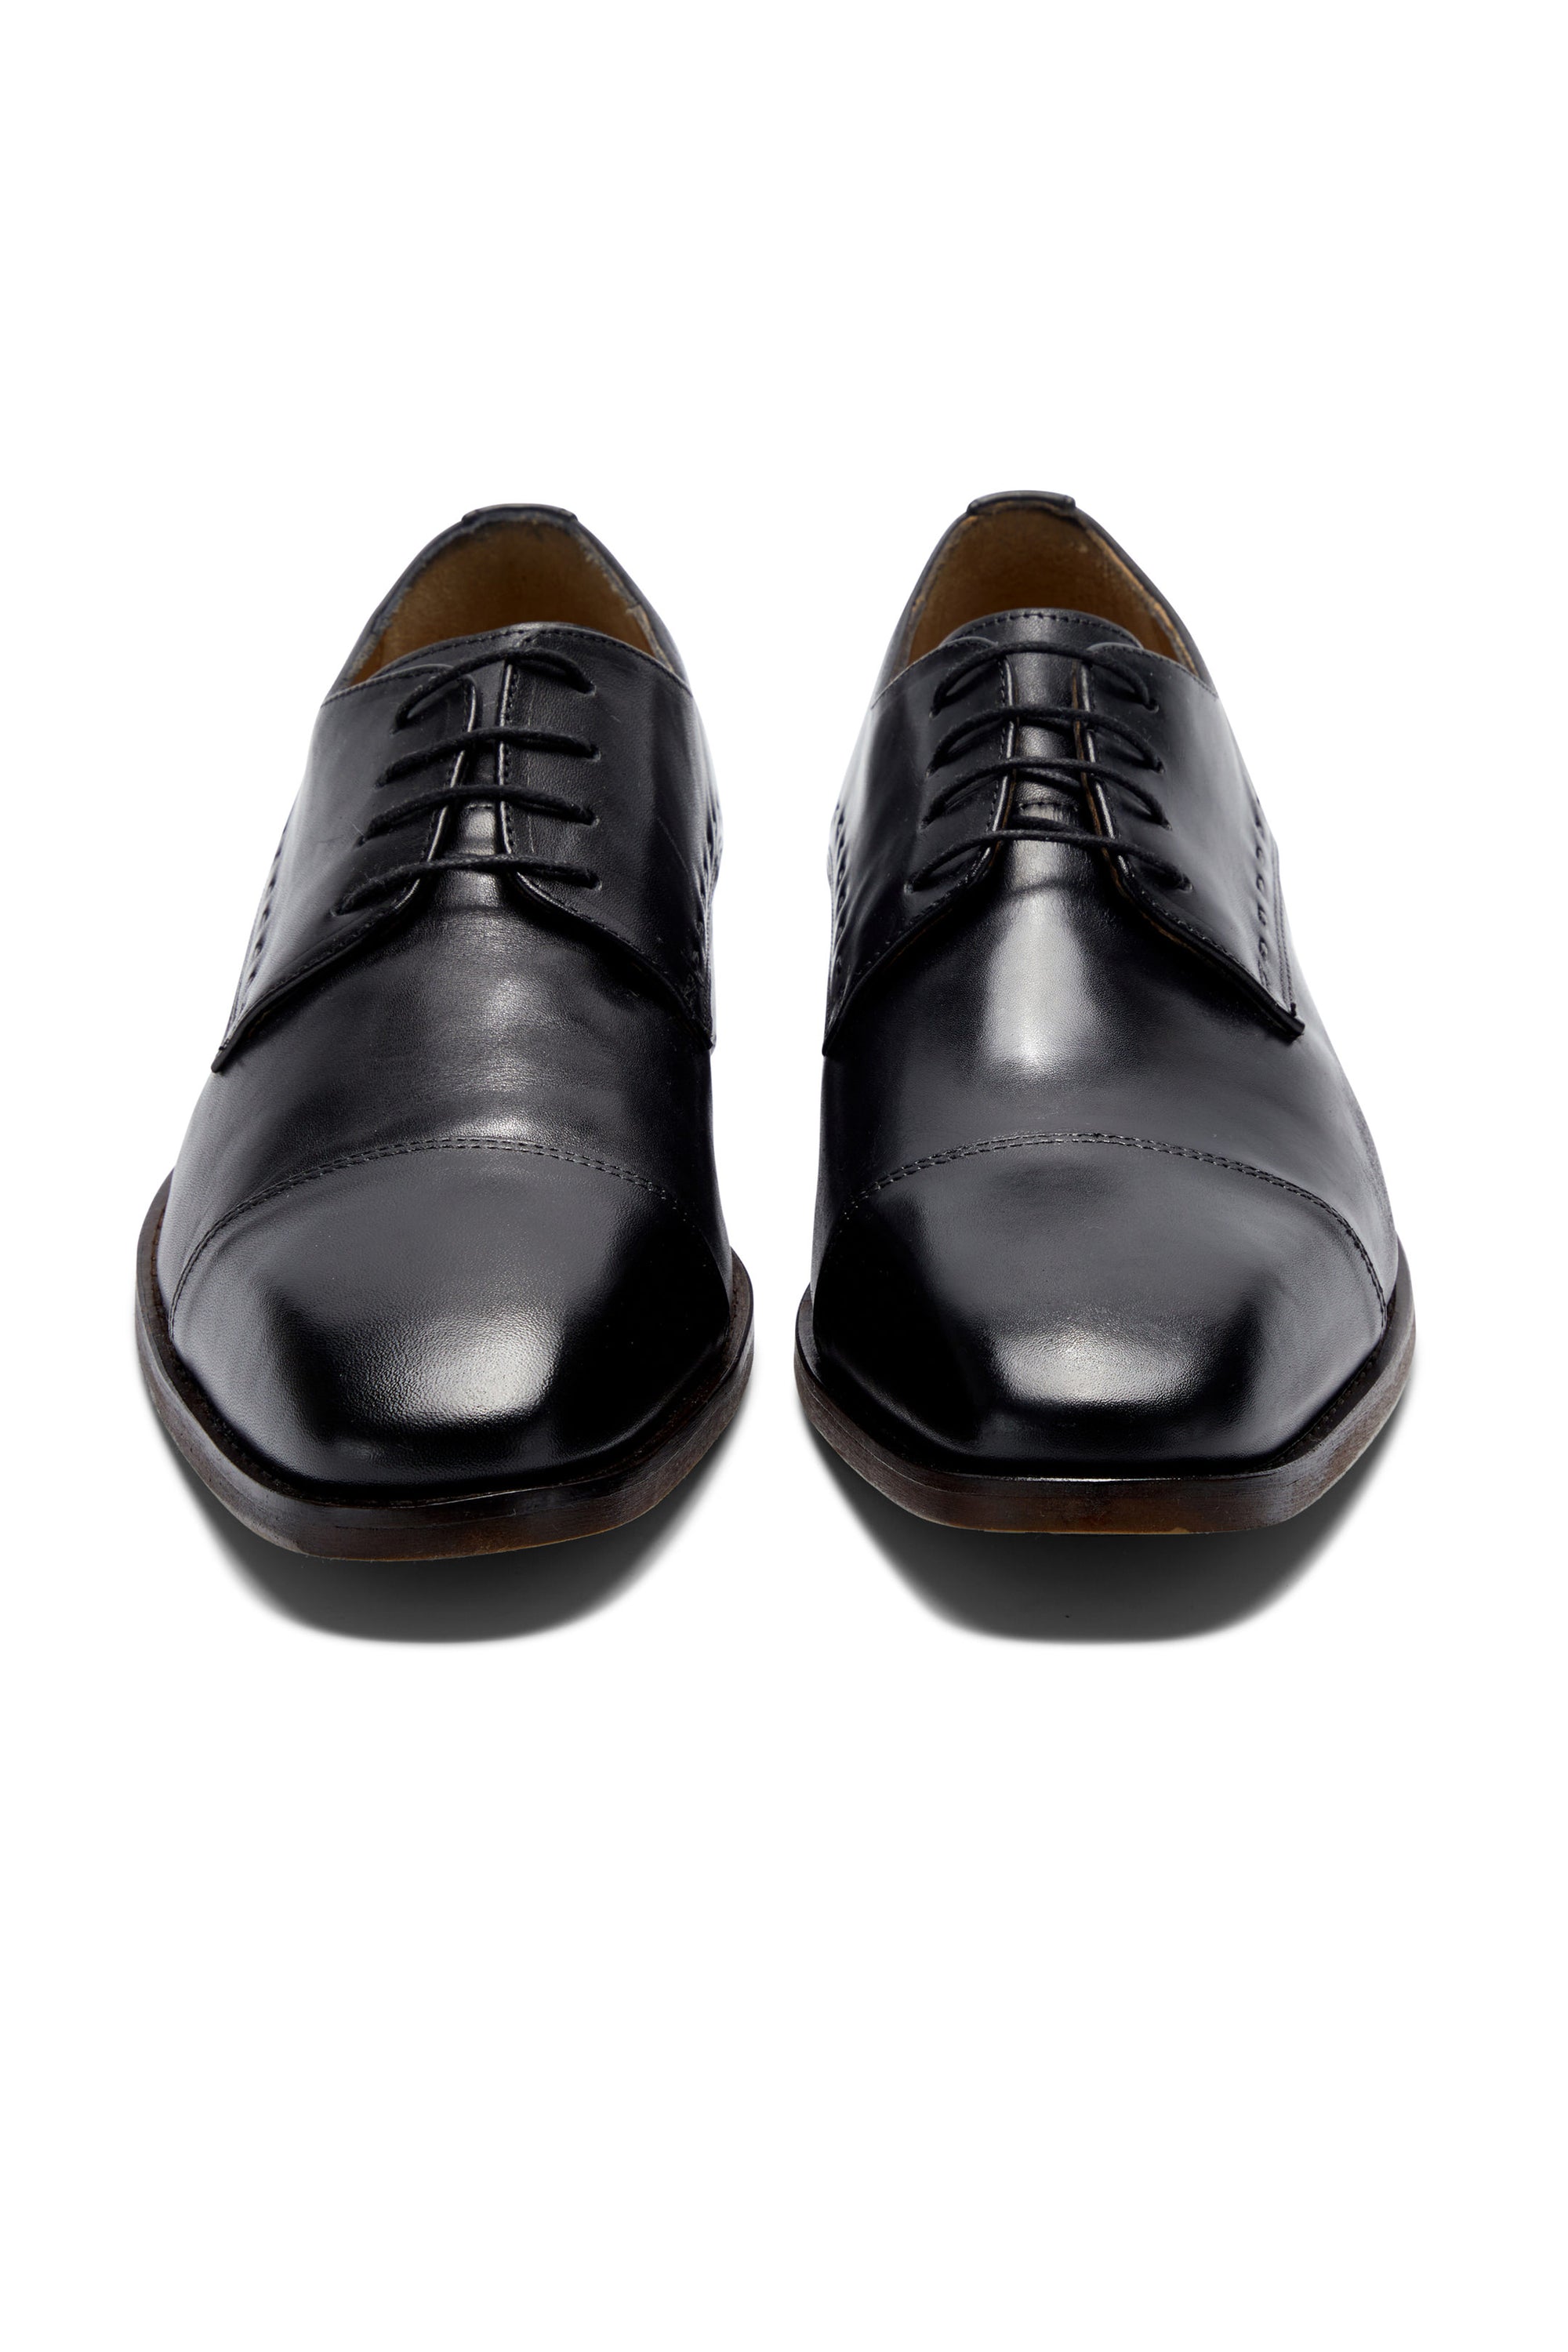 Arthur Black Shoe By Benetti Menswear 